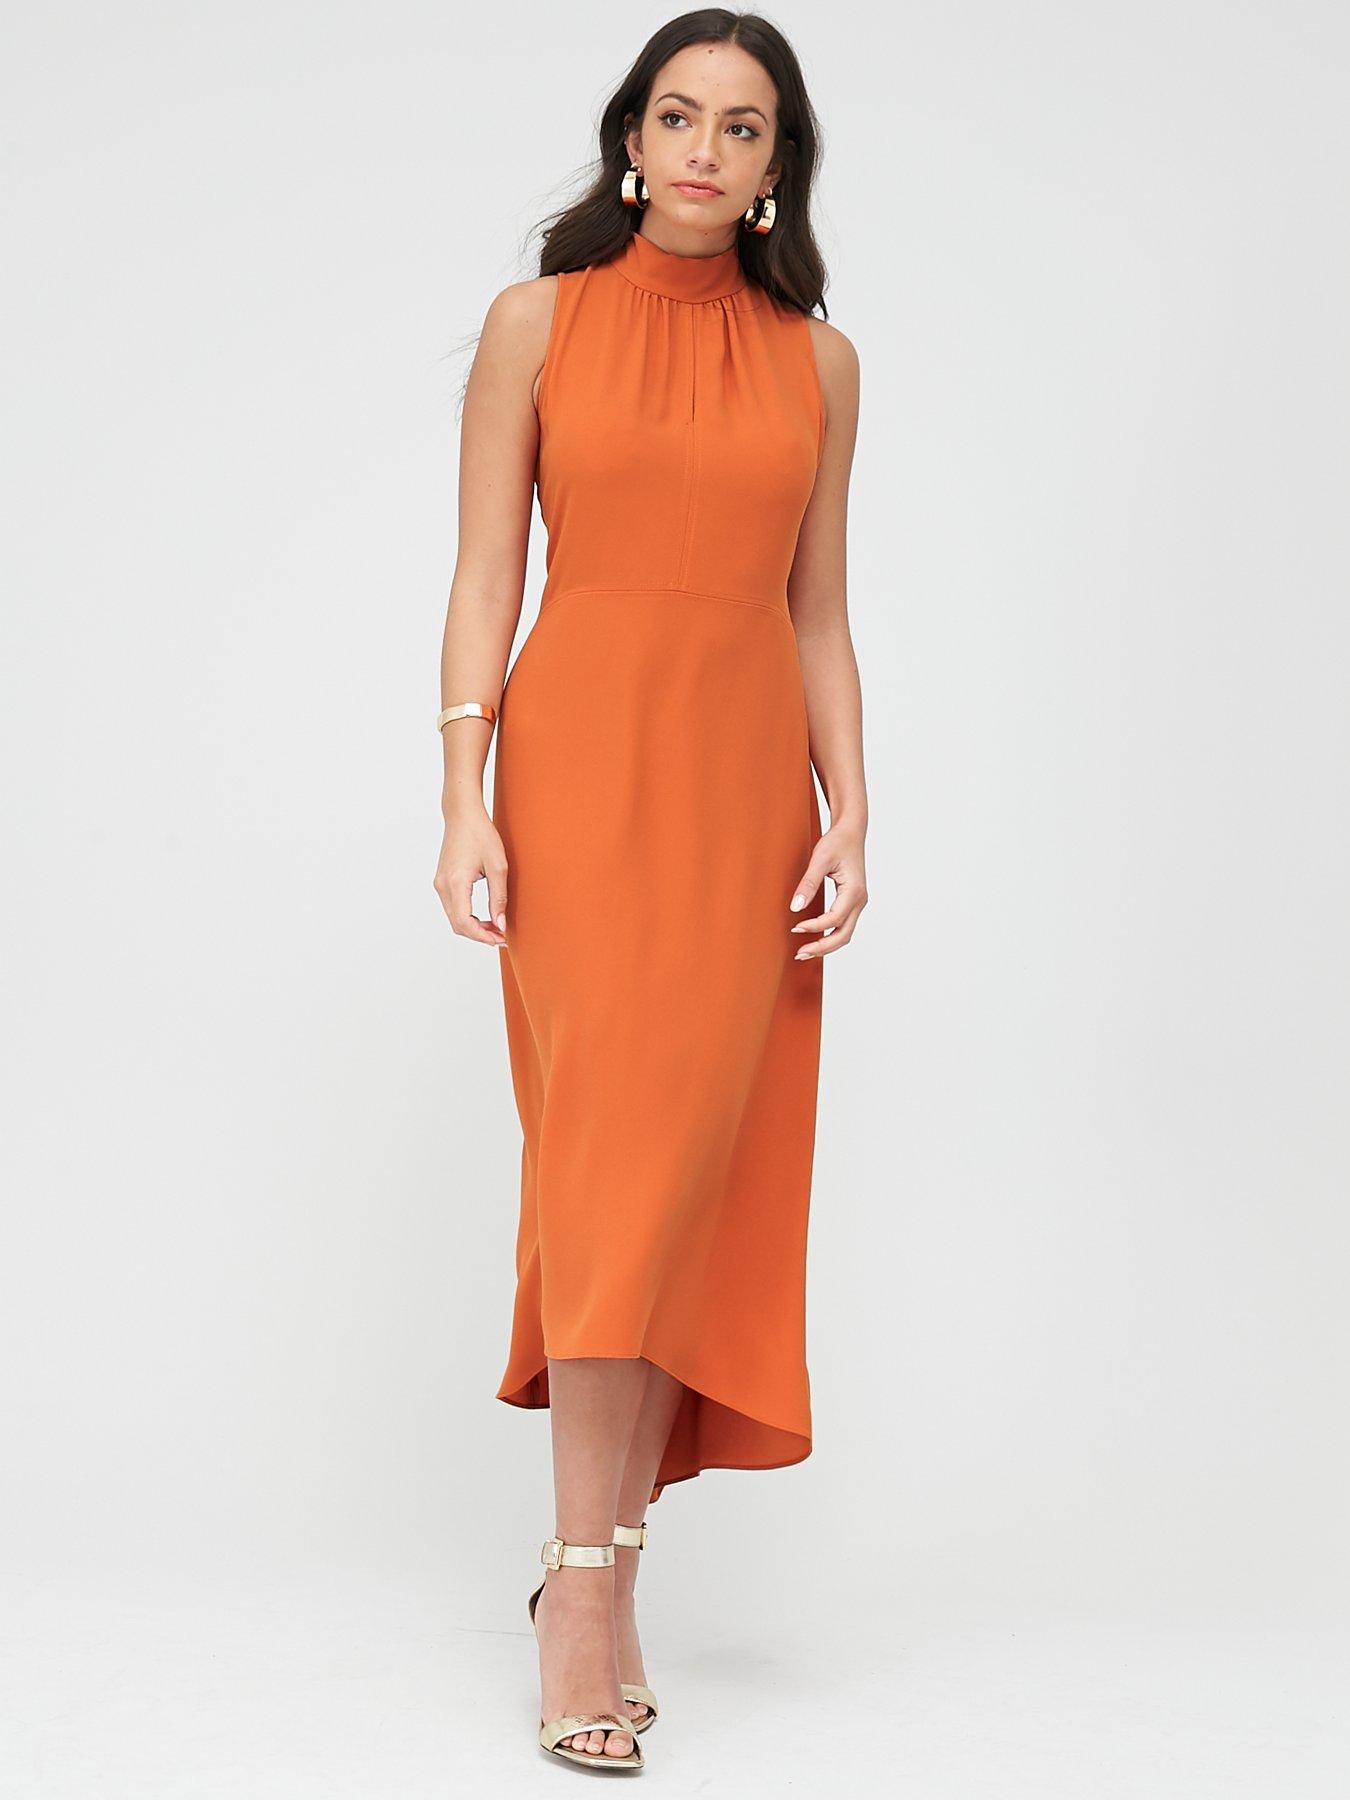 wallis orange dress